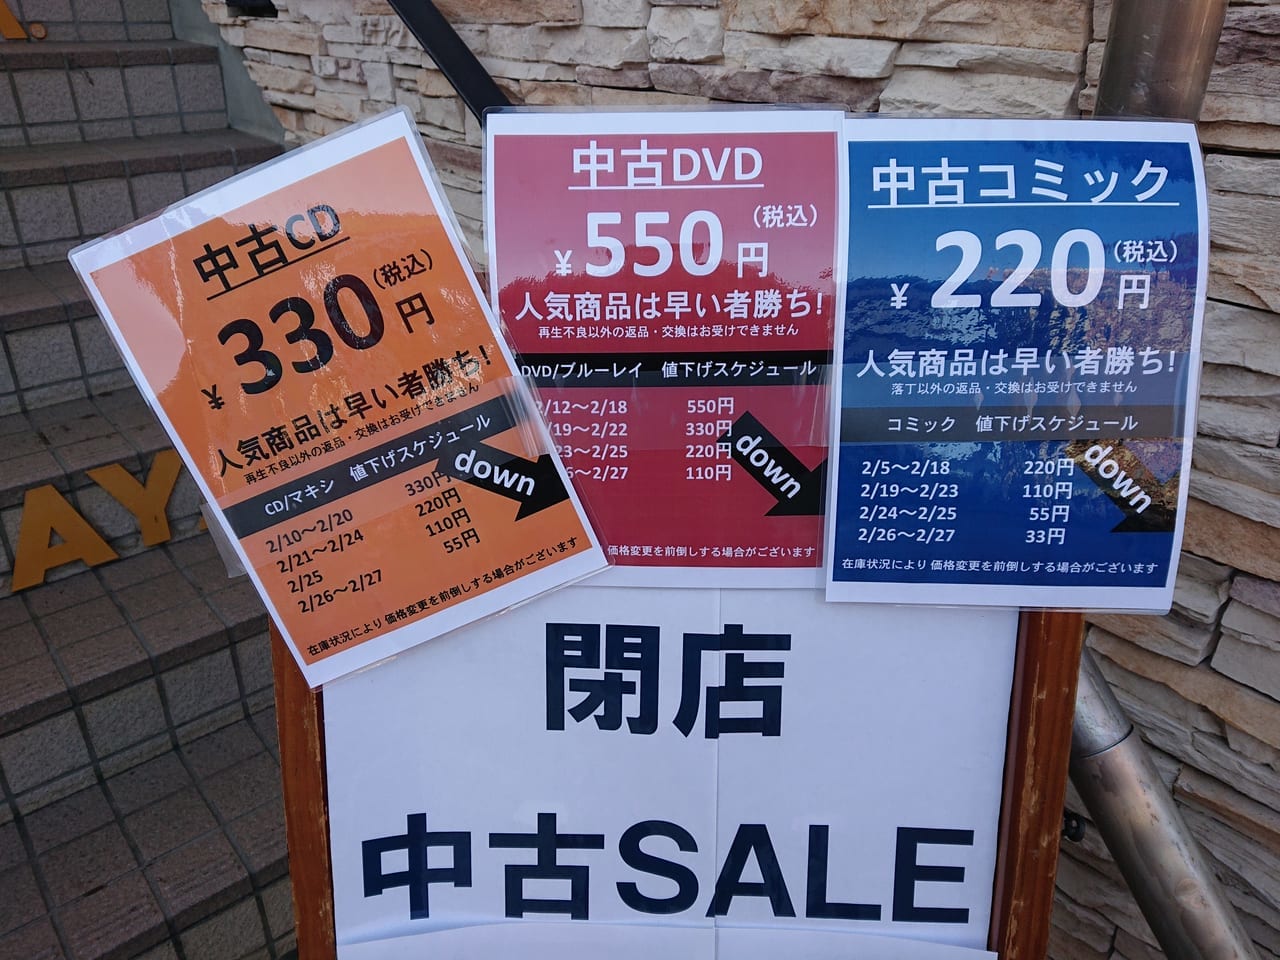 TSUTAYA花小金井駅前店でお得な閉店セールが開催中